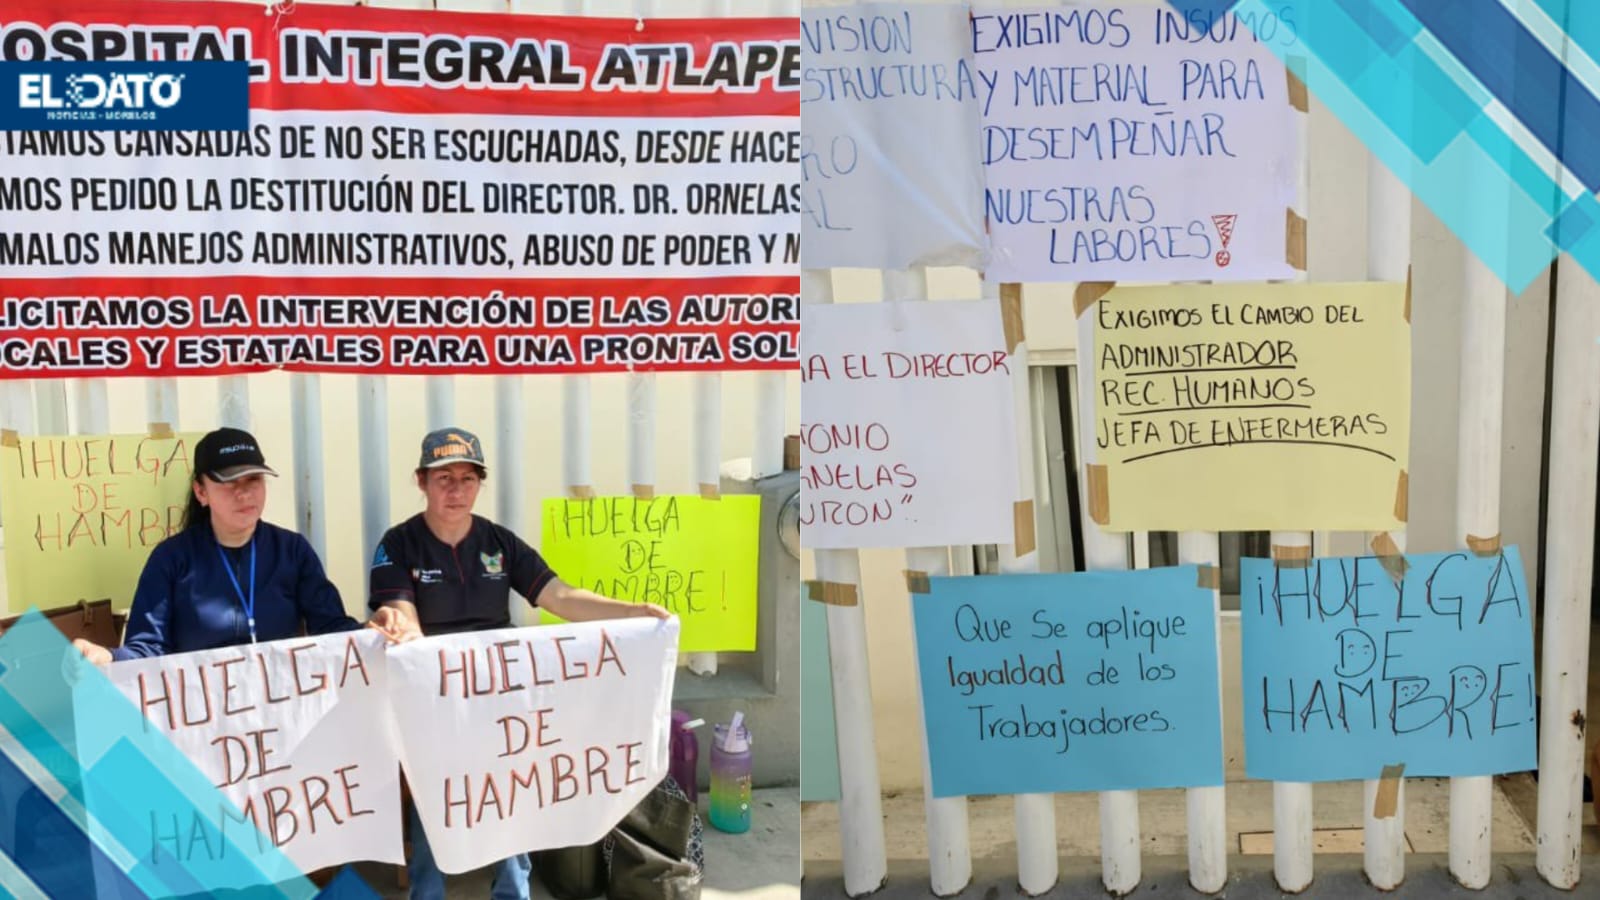 ENFERMERAS INICIAN HUELGA DE HAMBRE EN PROTESTA CONTRA HOSTIGAMIENTO Y CORRUPCIÓN EN HIDALGO